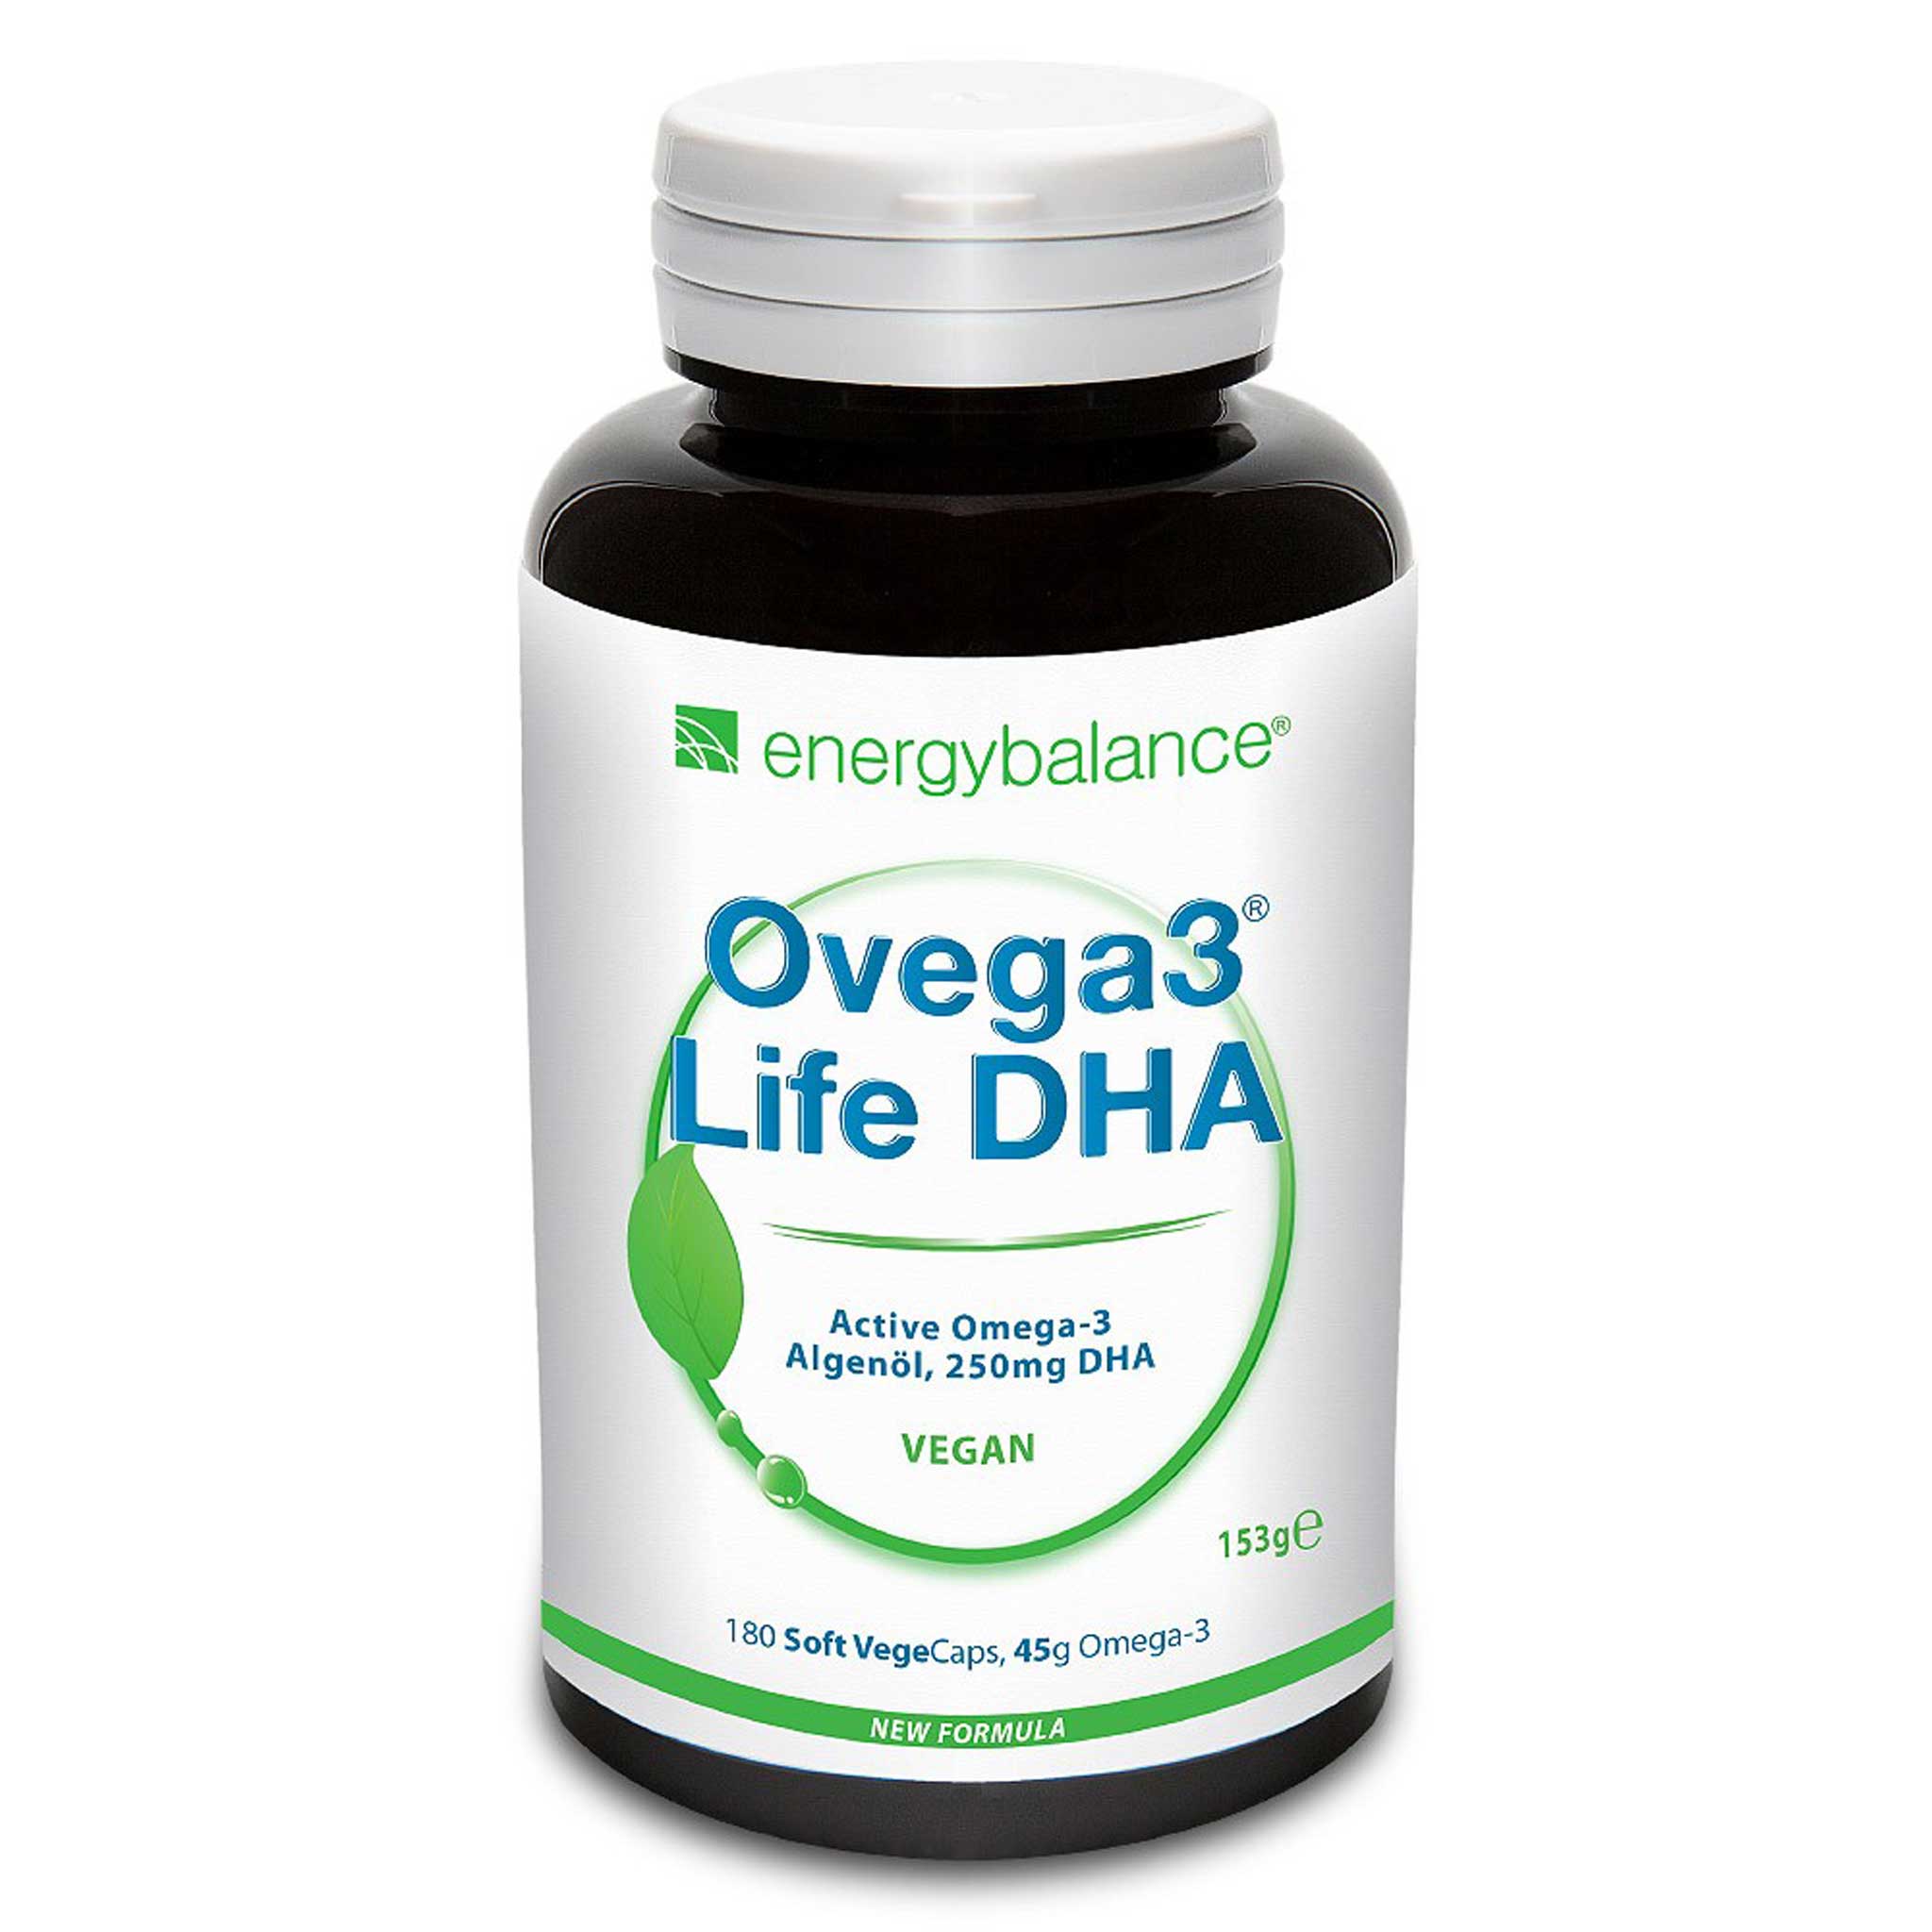 Ovega3 life DHA aceite de algas, 180 cápsulas